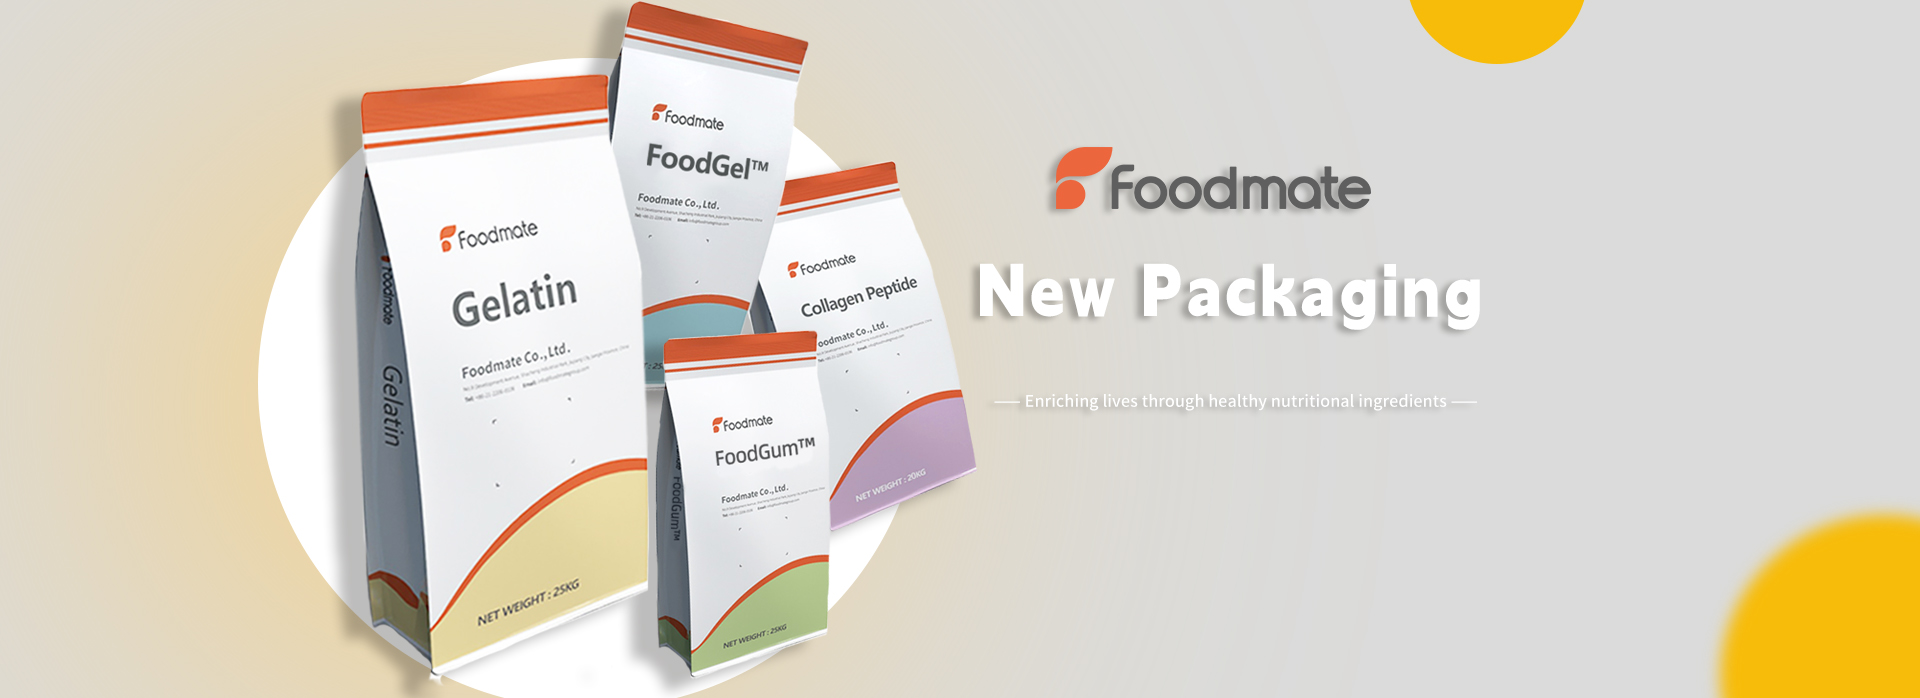 Foodmate package